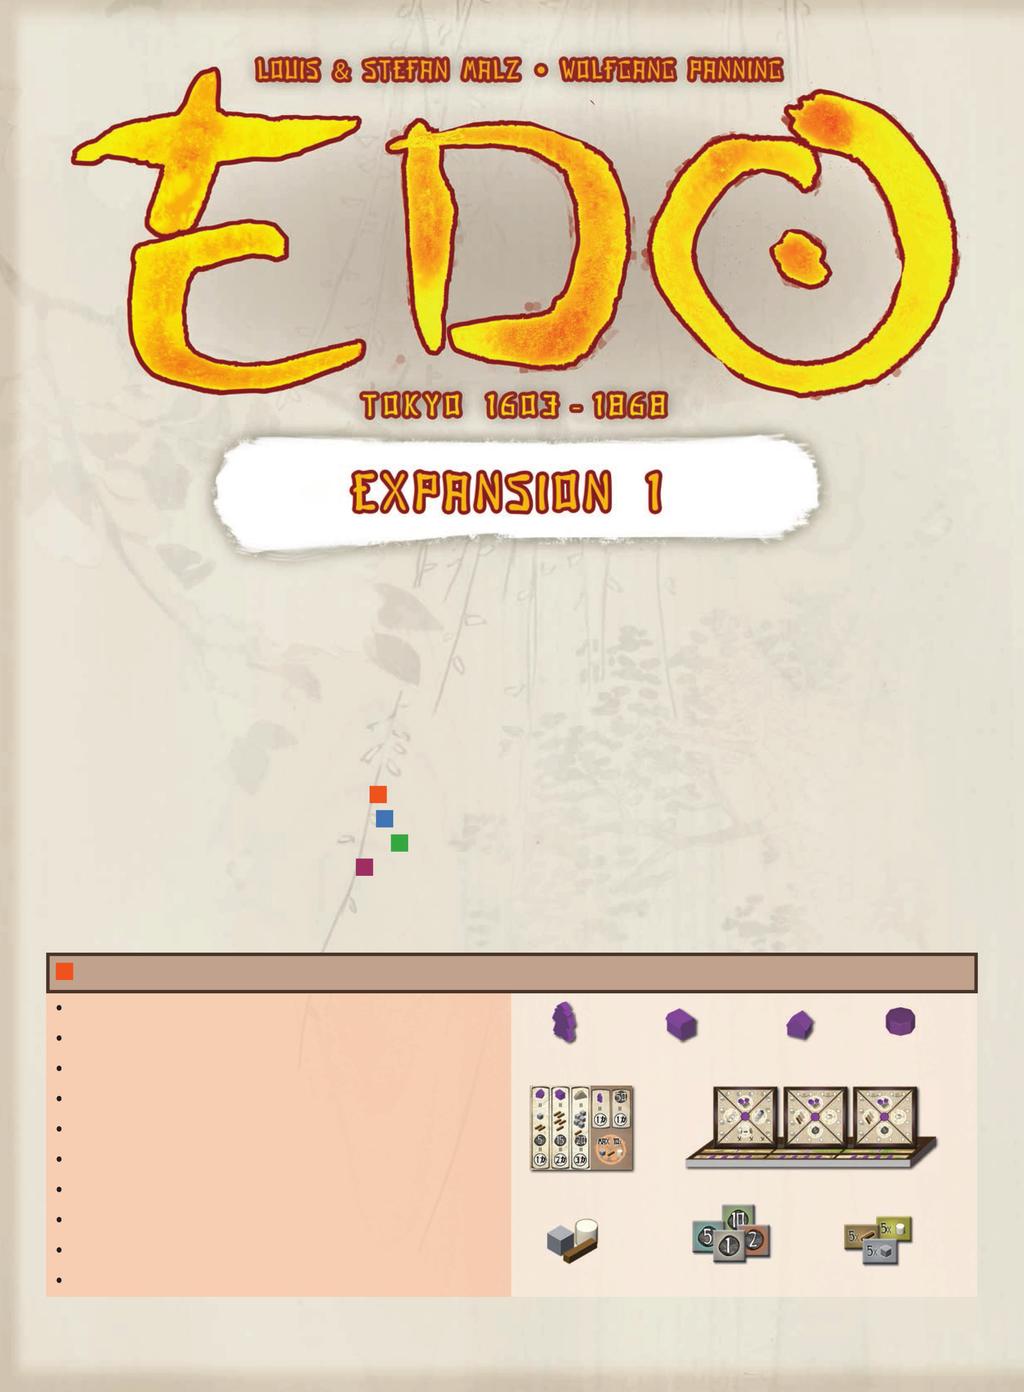 Μπορείτε να παίξετε την επέκταση αυτή μόνο σε συνδυασμό με το βασικό Edo. Η επέκταση αυτή περιλαμβάνει 3 παραλλαγές, οι οποίες προσφέρουν νέους τρόπους παιξίματος του βασικού Edo.